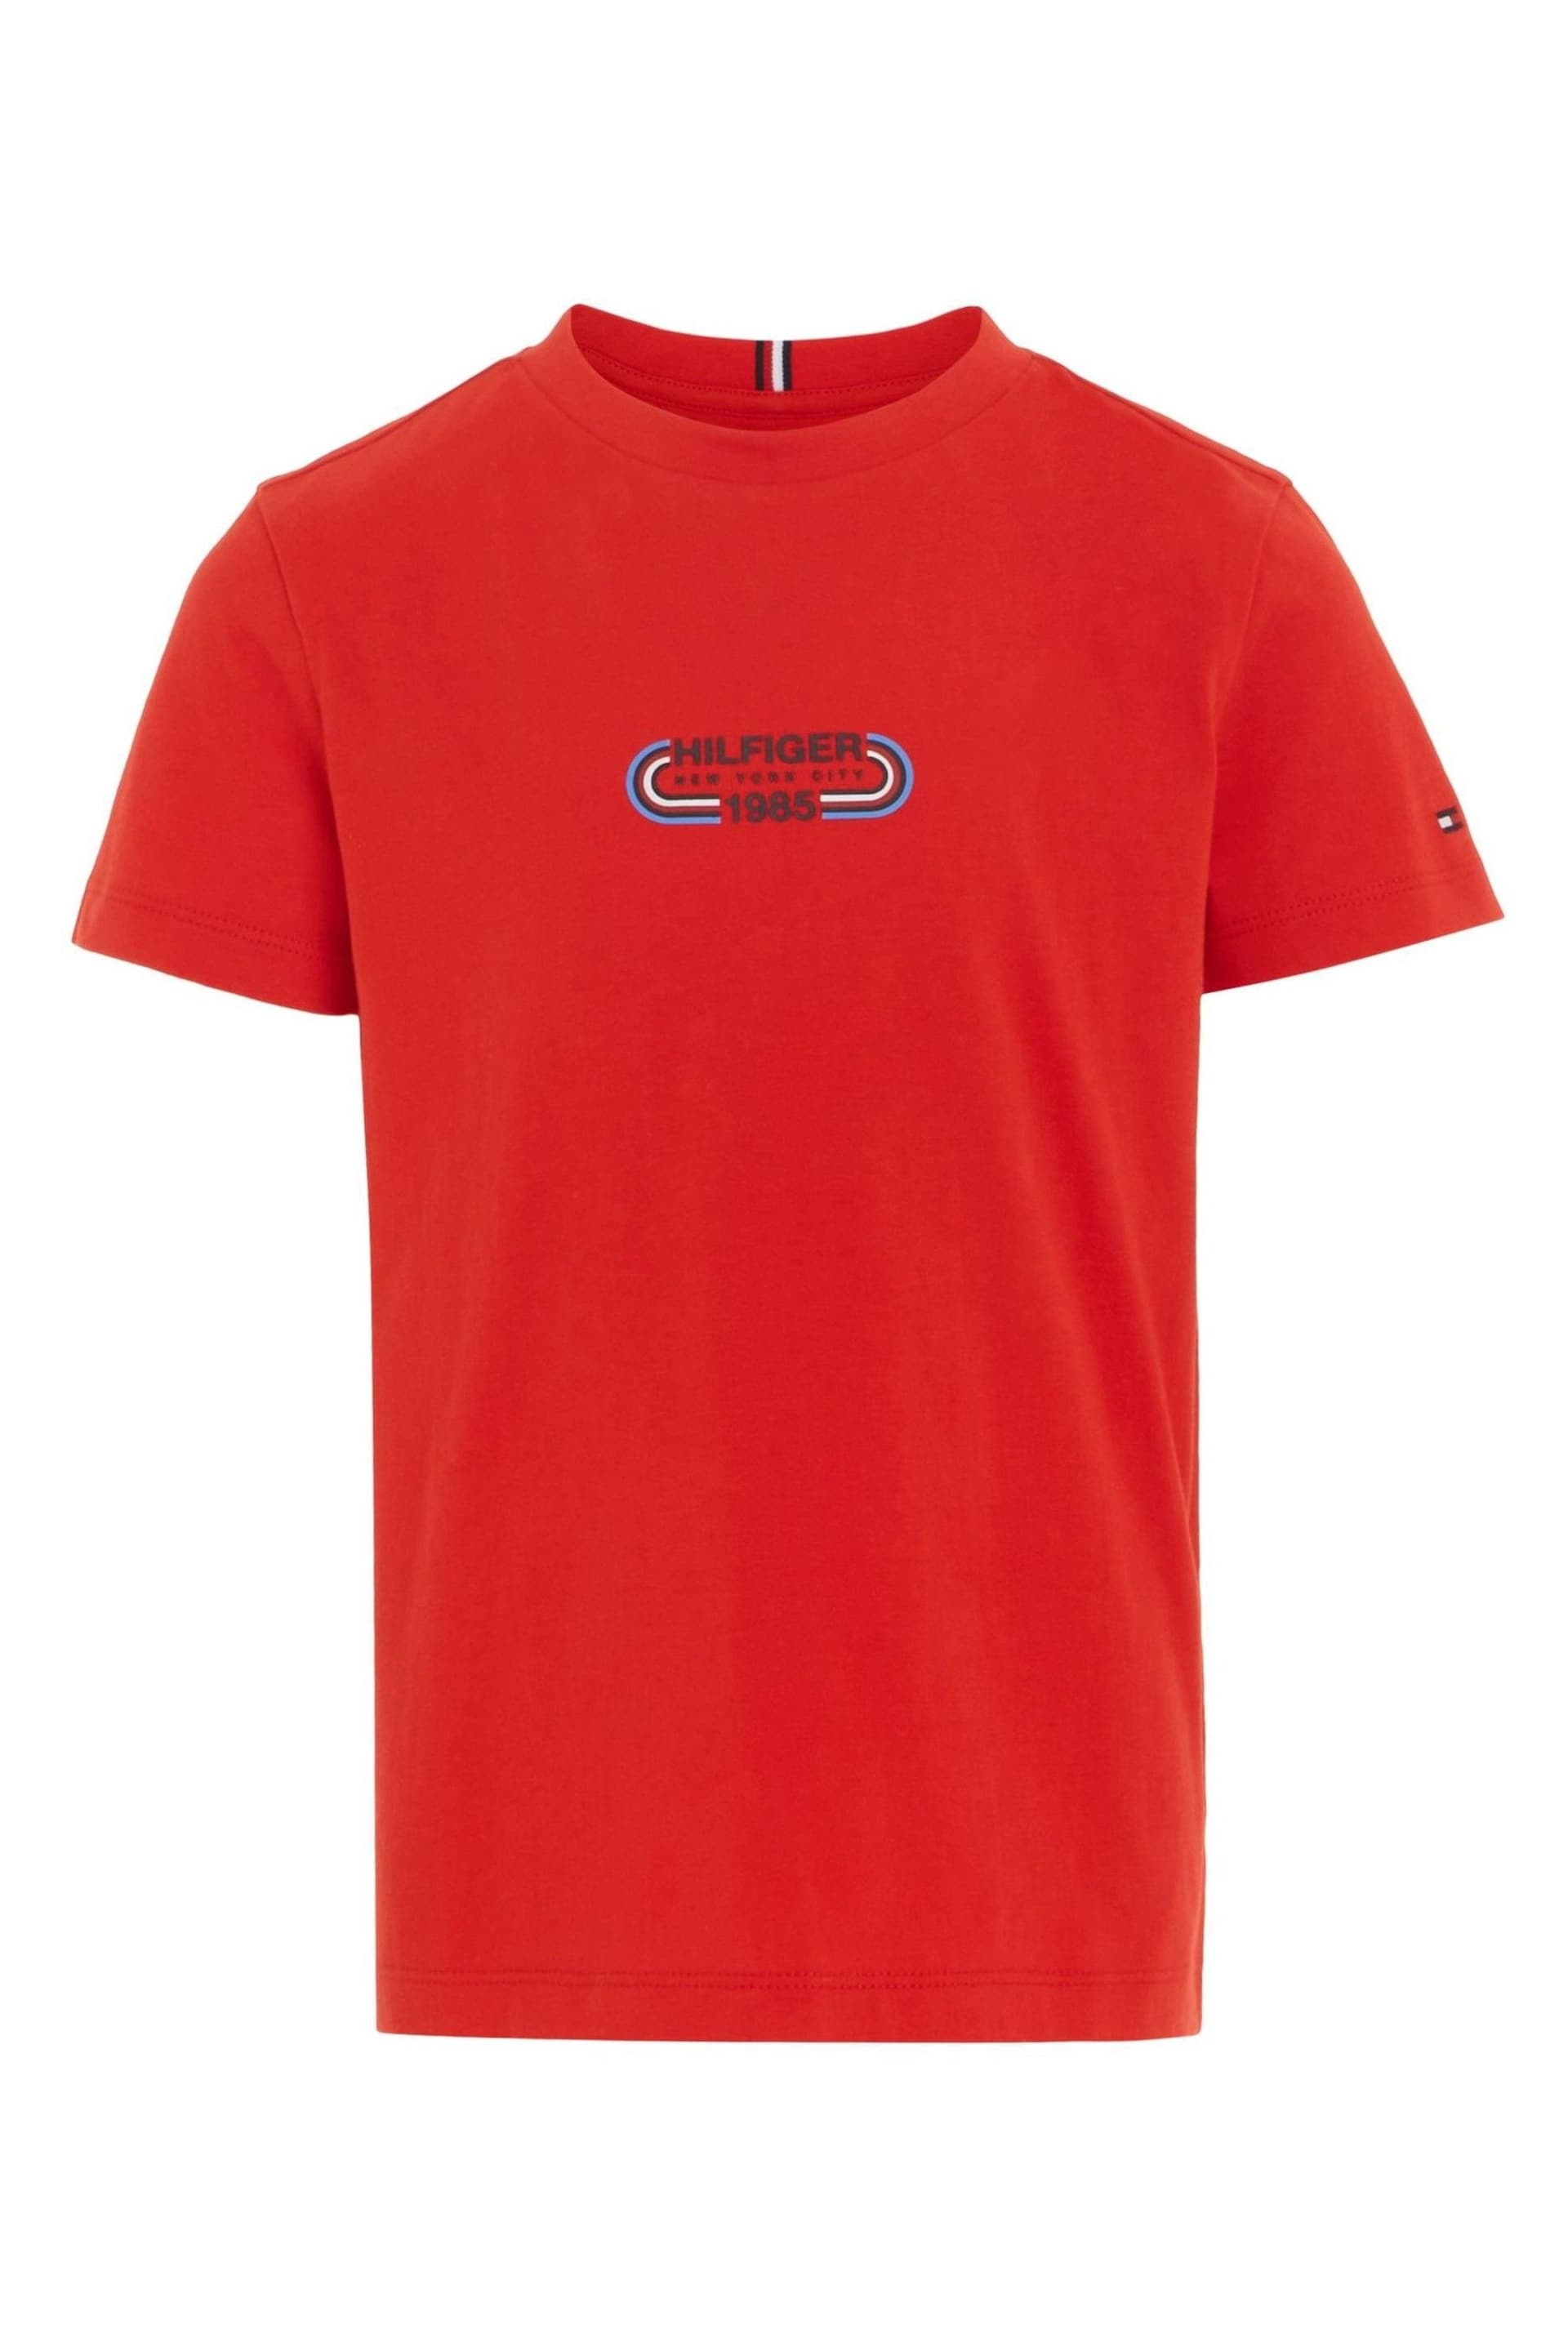 Tommy Hilfiger Hilfiger Track T-Shirt - Image 4 of 6